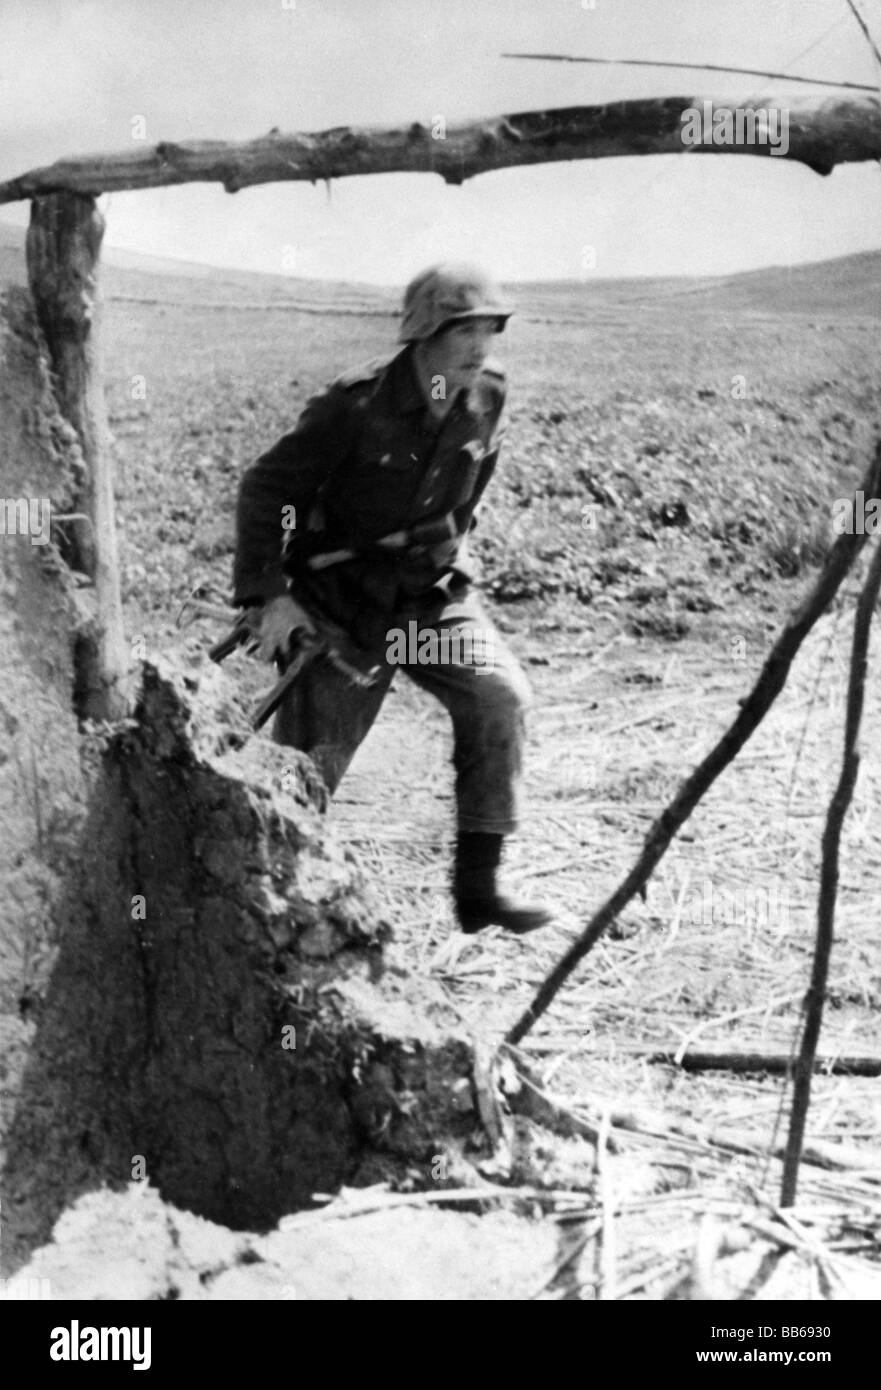 Événements, seconde Guerre mondiale / seconde Guerre mondiale, Russie 1942 / 1943, soldat allemand attaquant, Banque D'Images